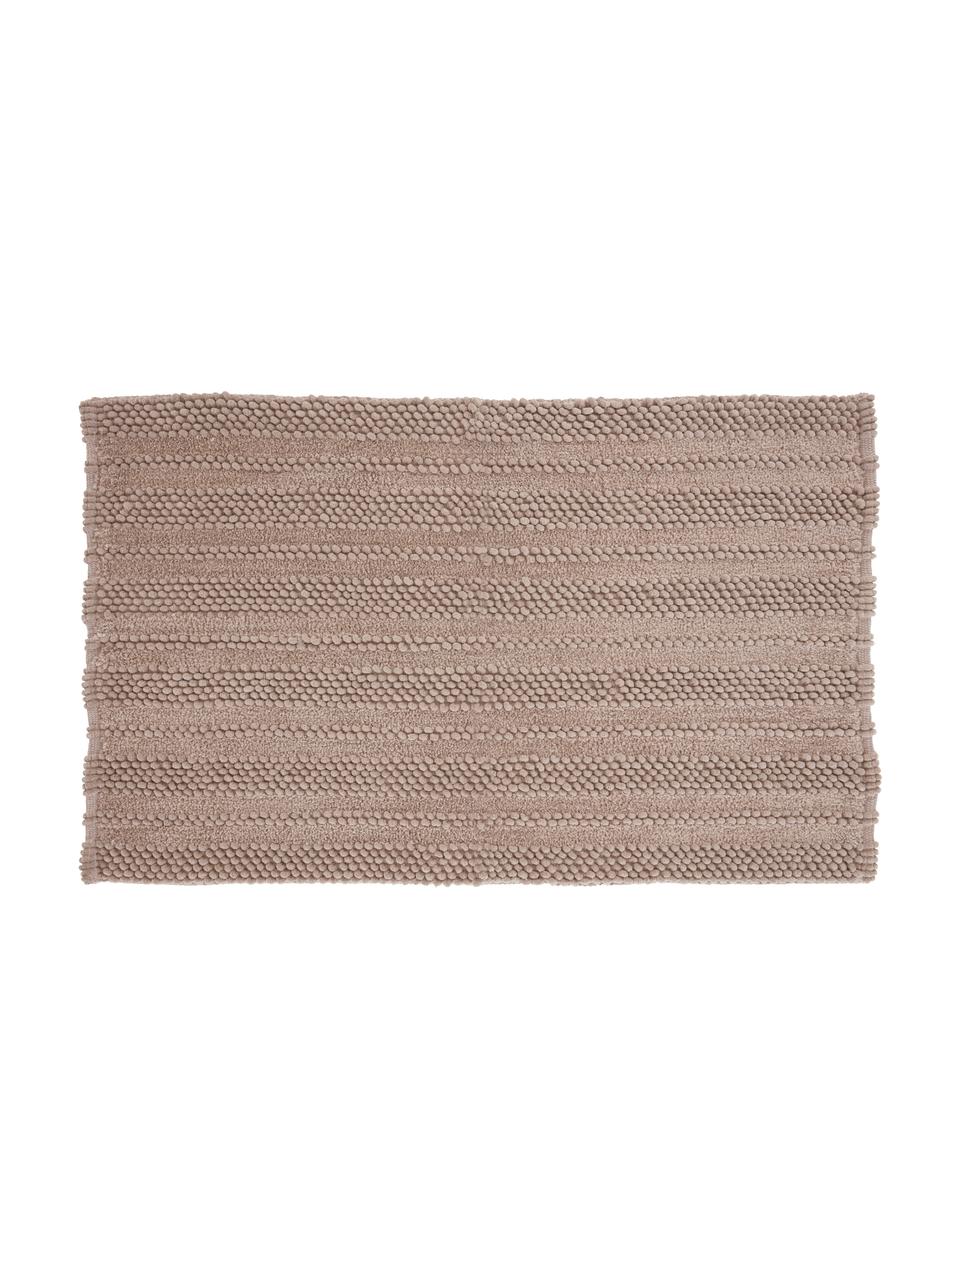 Weicher Badvorleger Nea mit Hoch-Tief-Muster in Sandfarben, verschiedene Größen, 65% Polyester, 35% Baumwolle, Sandfarben, 50 x 80 cm